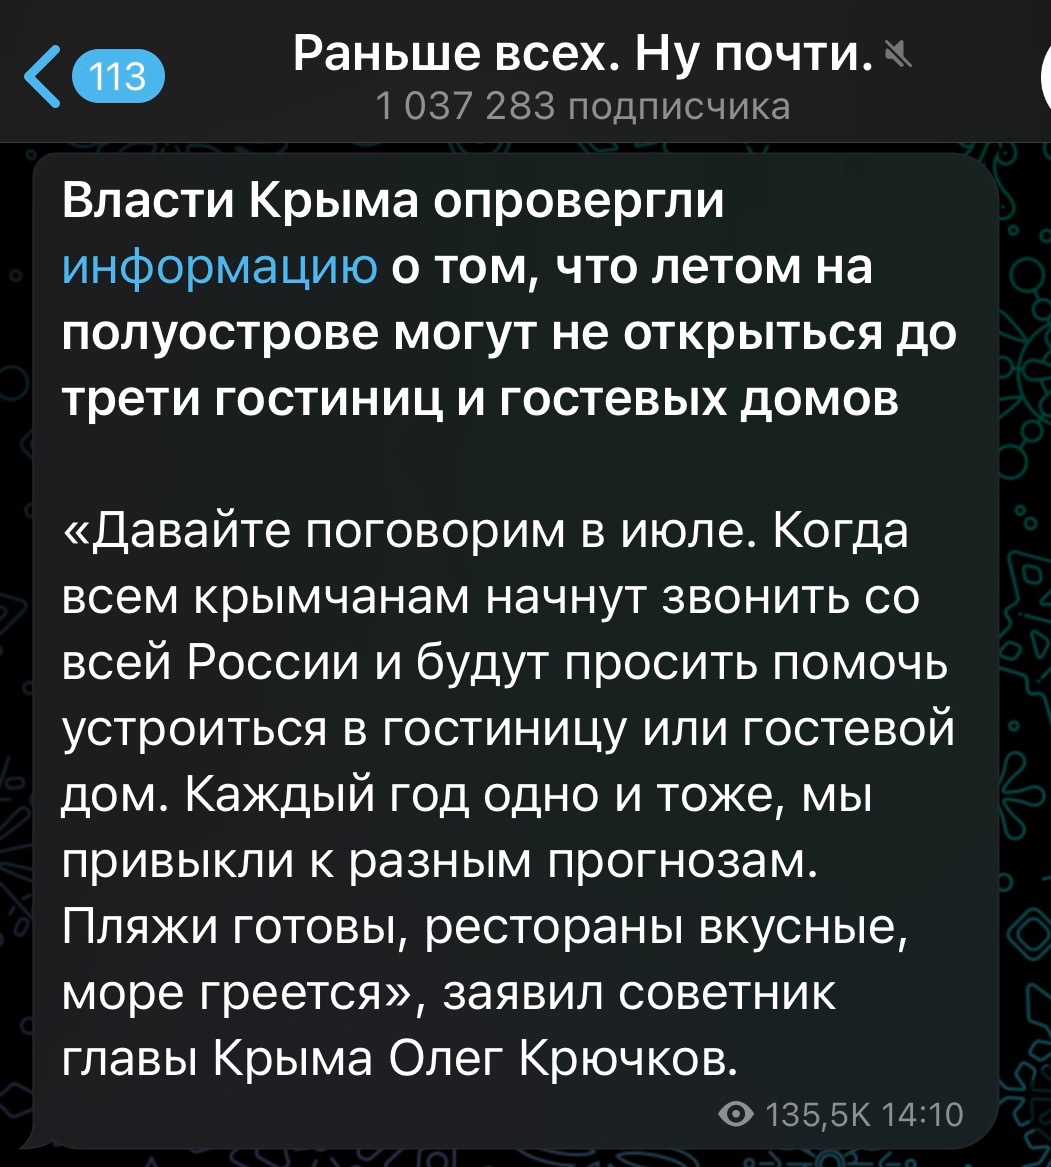 Фейк: в Крыму летом могут не открыться до трети гостиниц и гостевых домов Ограничения